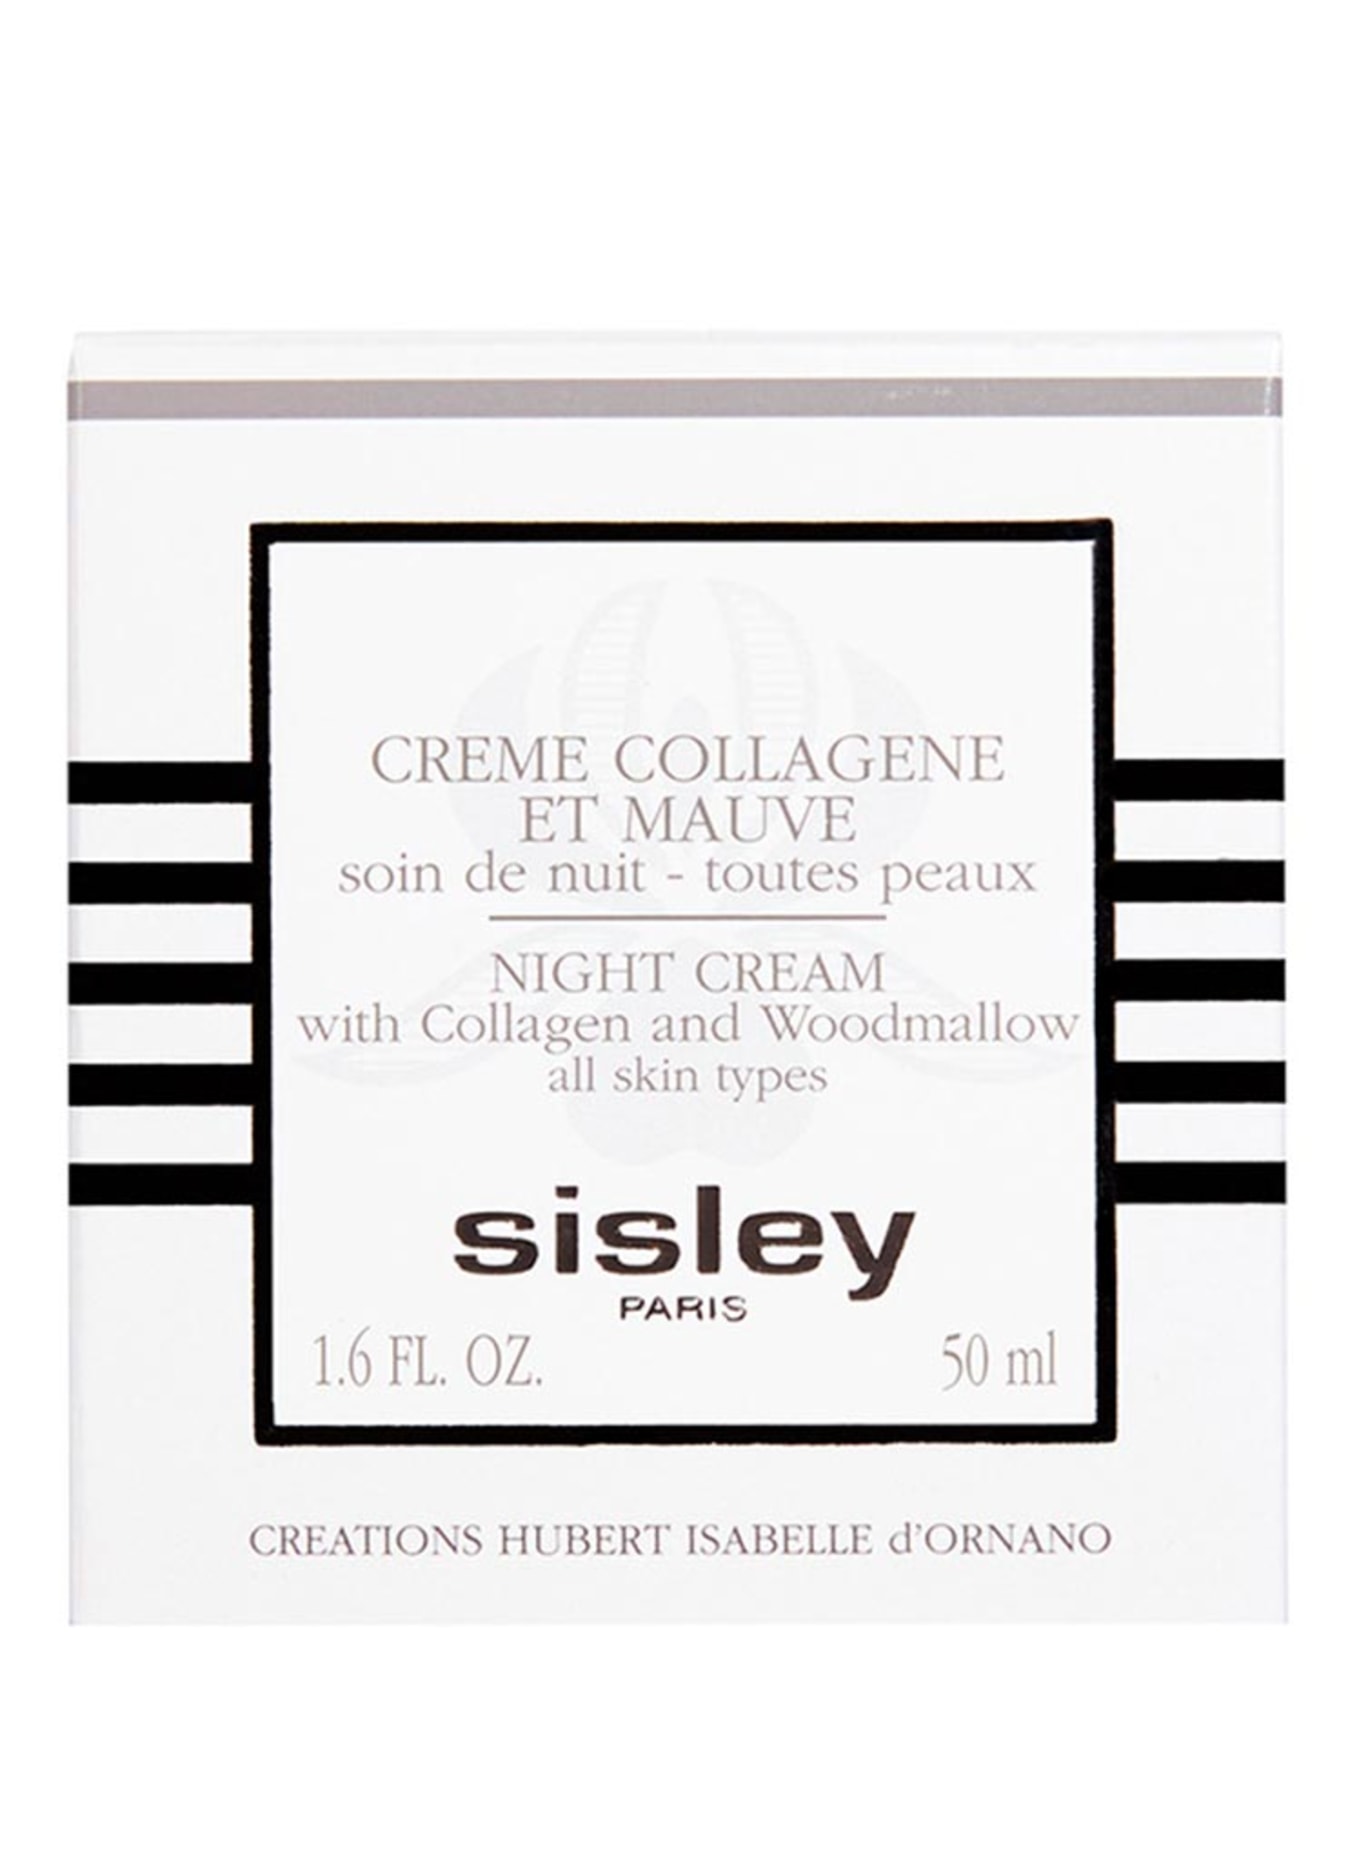 sisley Paris CRÈME COLLAGÈNE ET MAUVE (Bild 2)